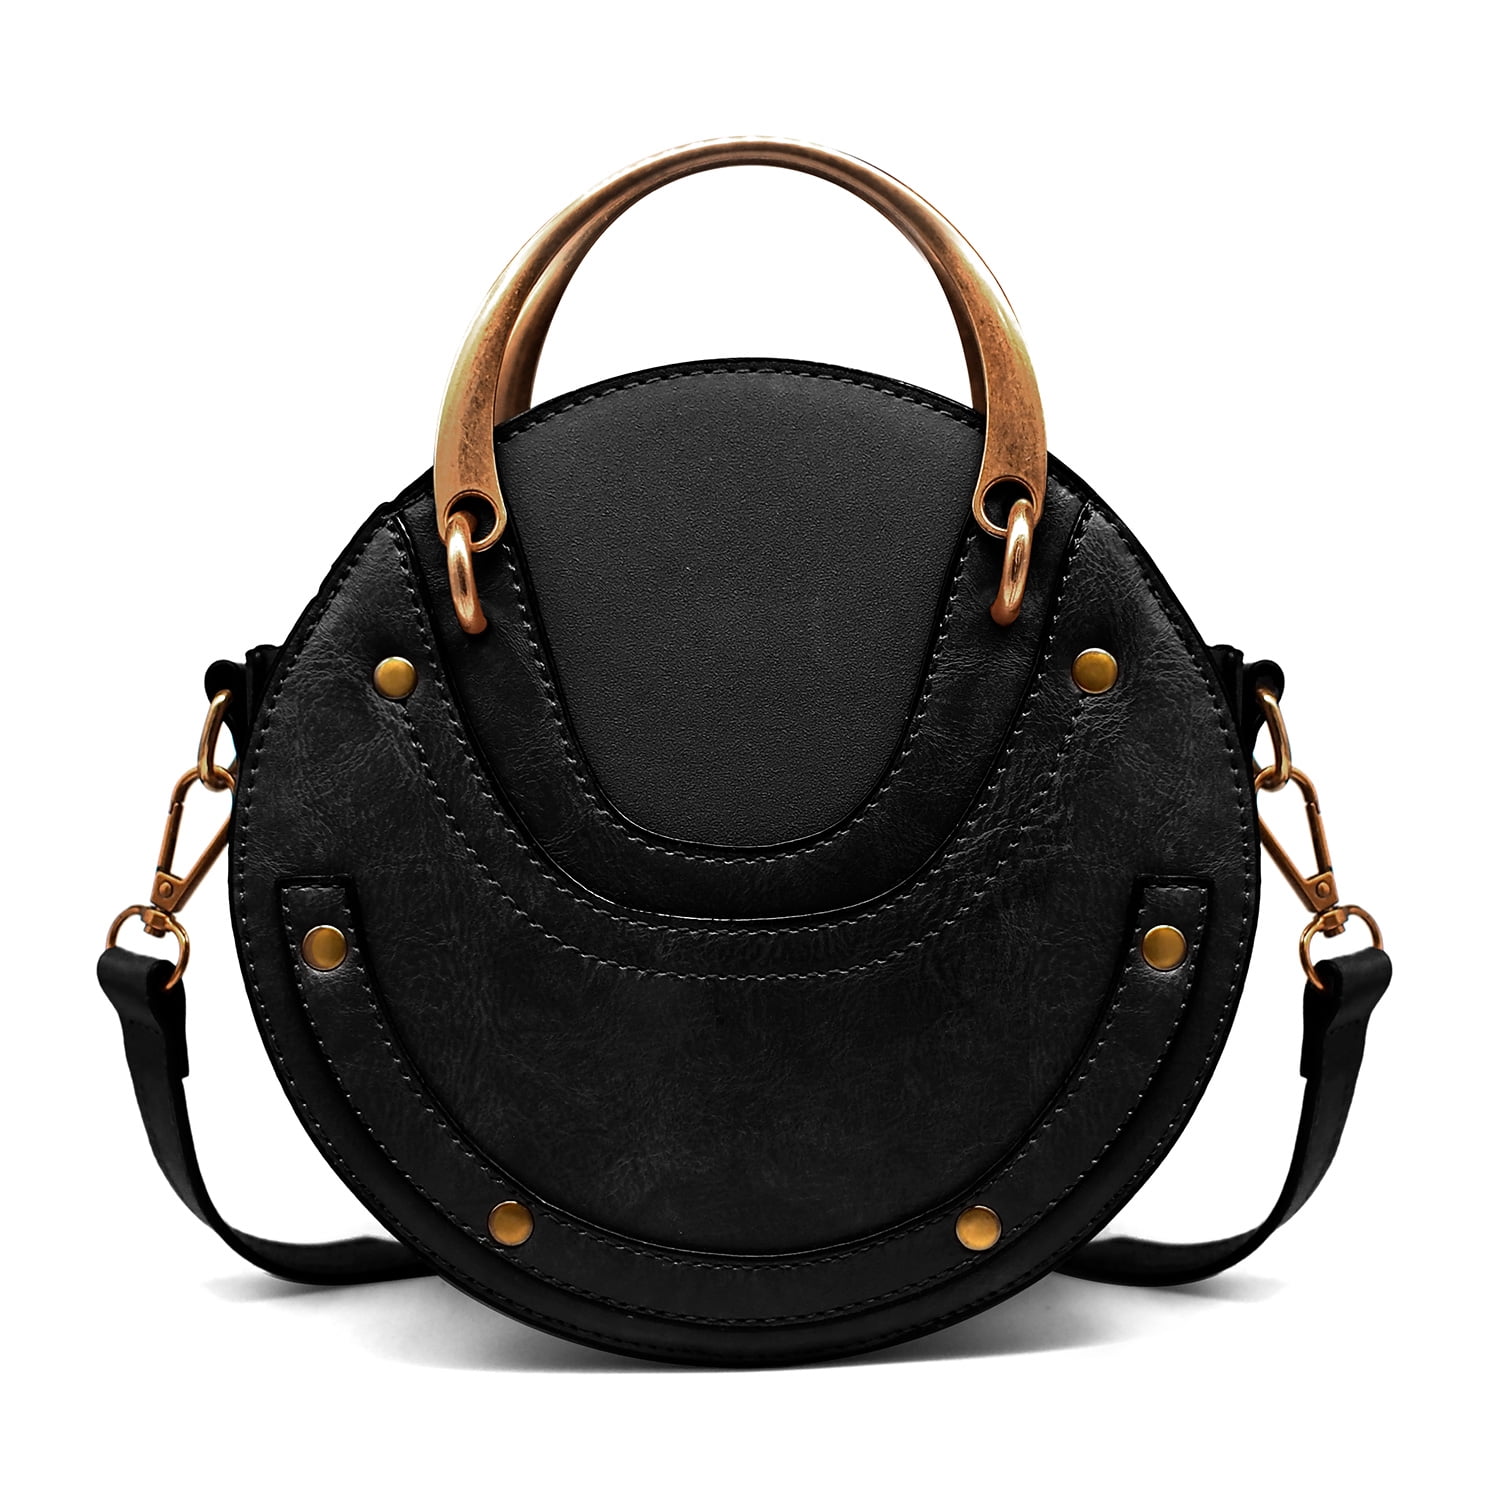 Black Vintage Quilted Shoulder Bag Crossbody Purse with Metal